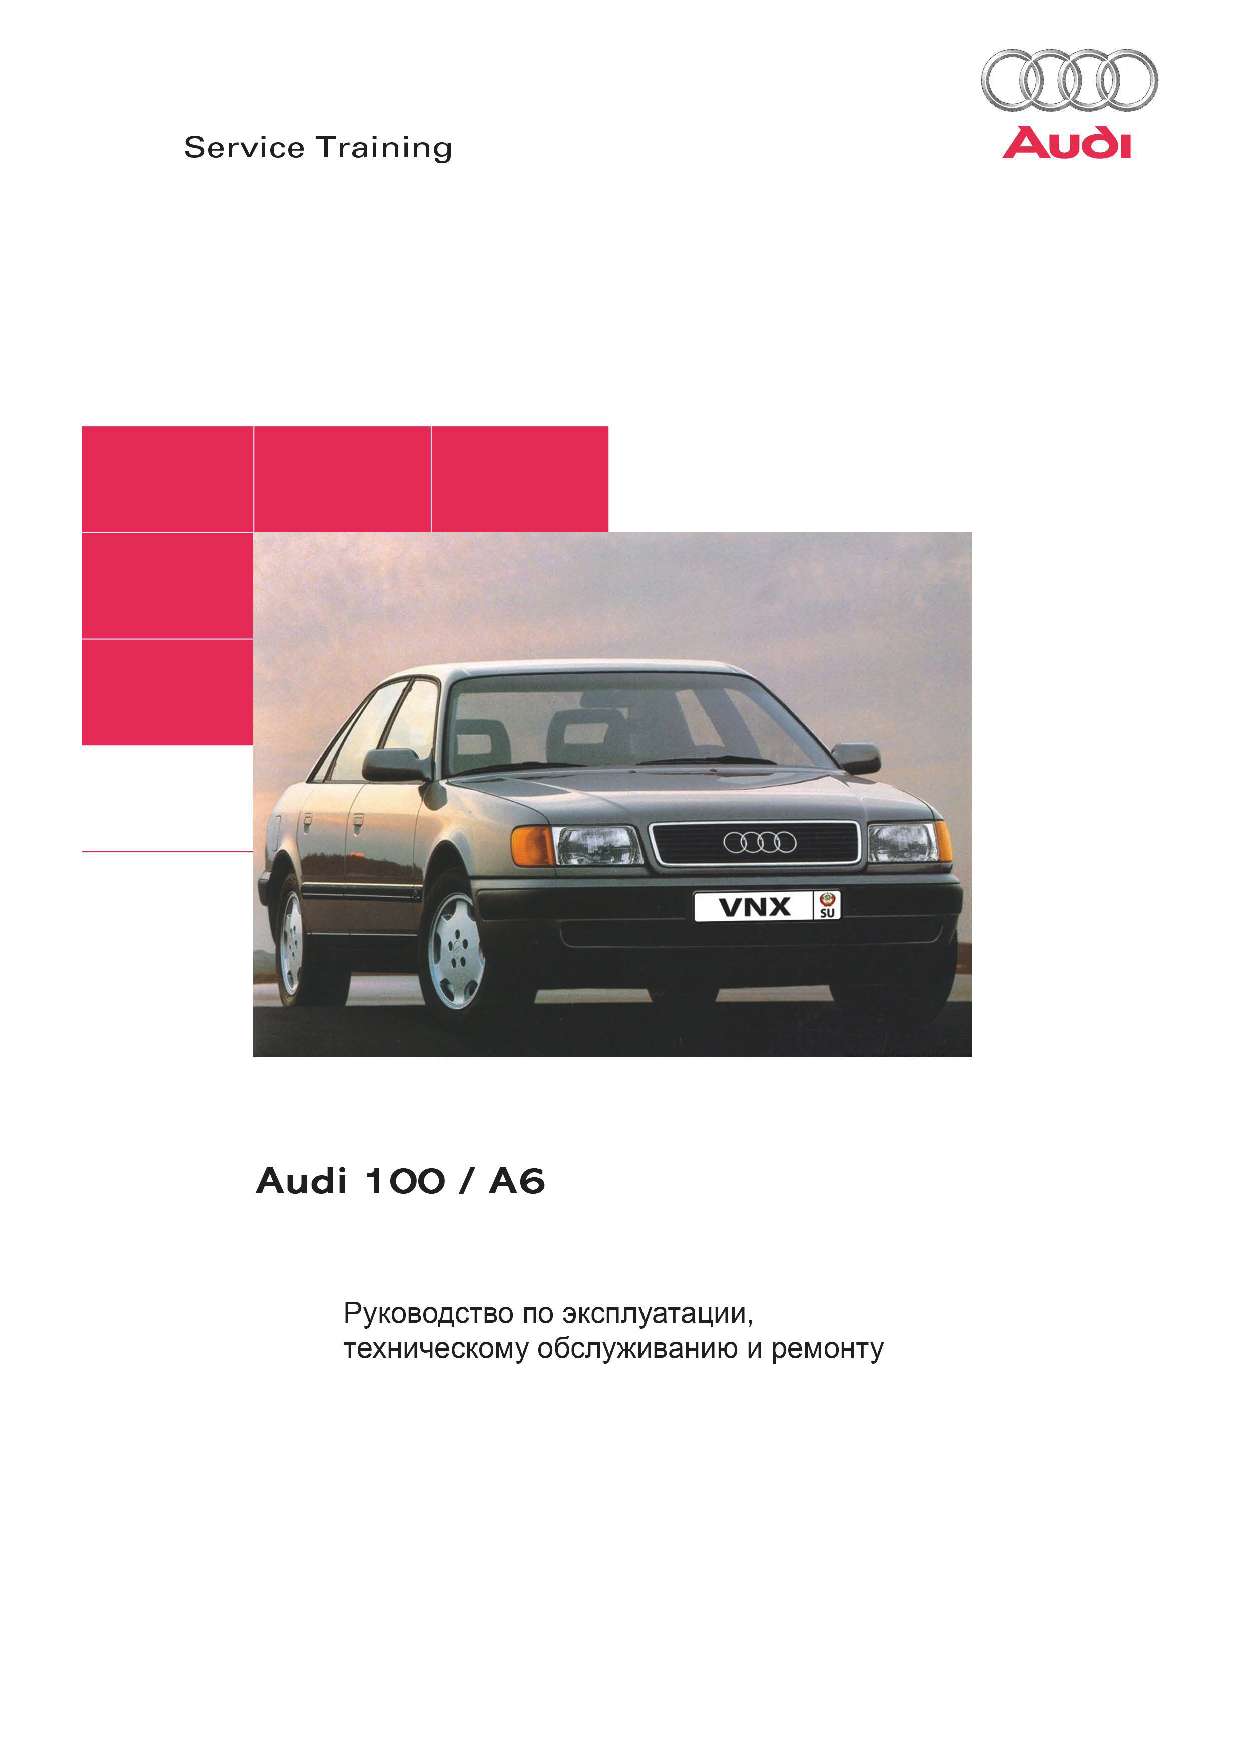 Audi 100/A6 Ремонт и техническое обслуживание обложка